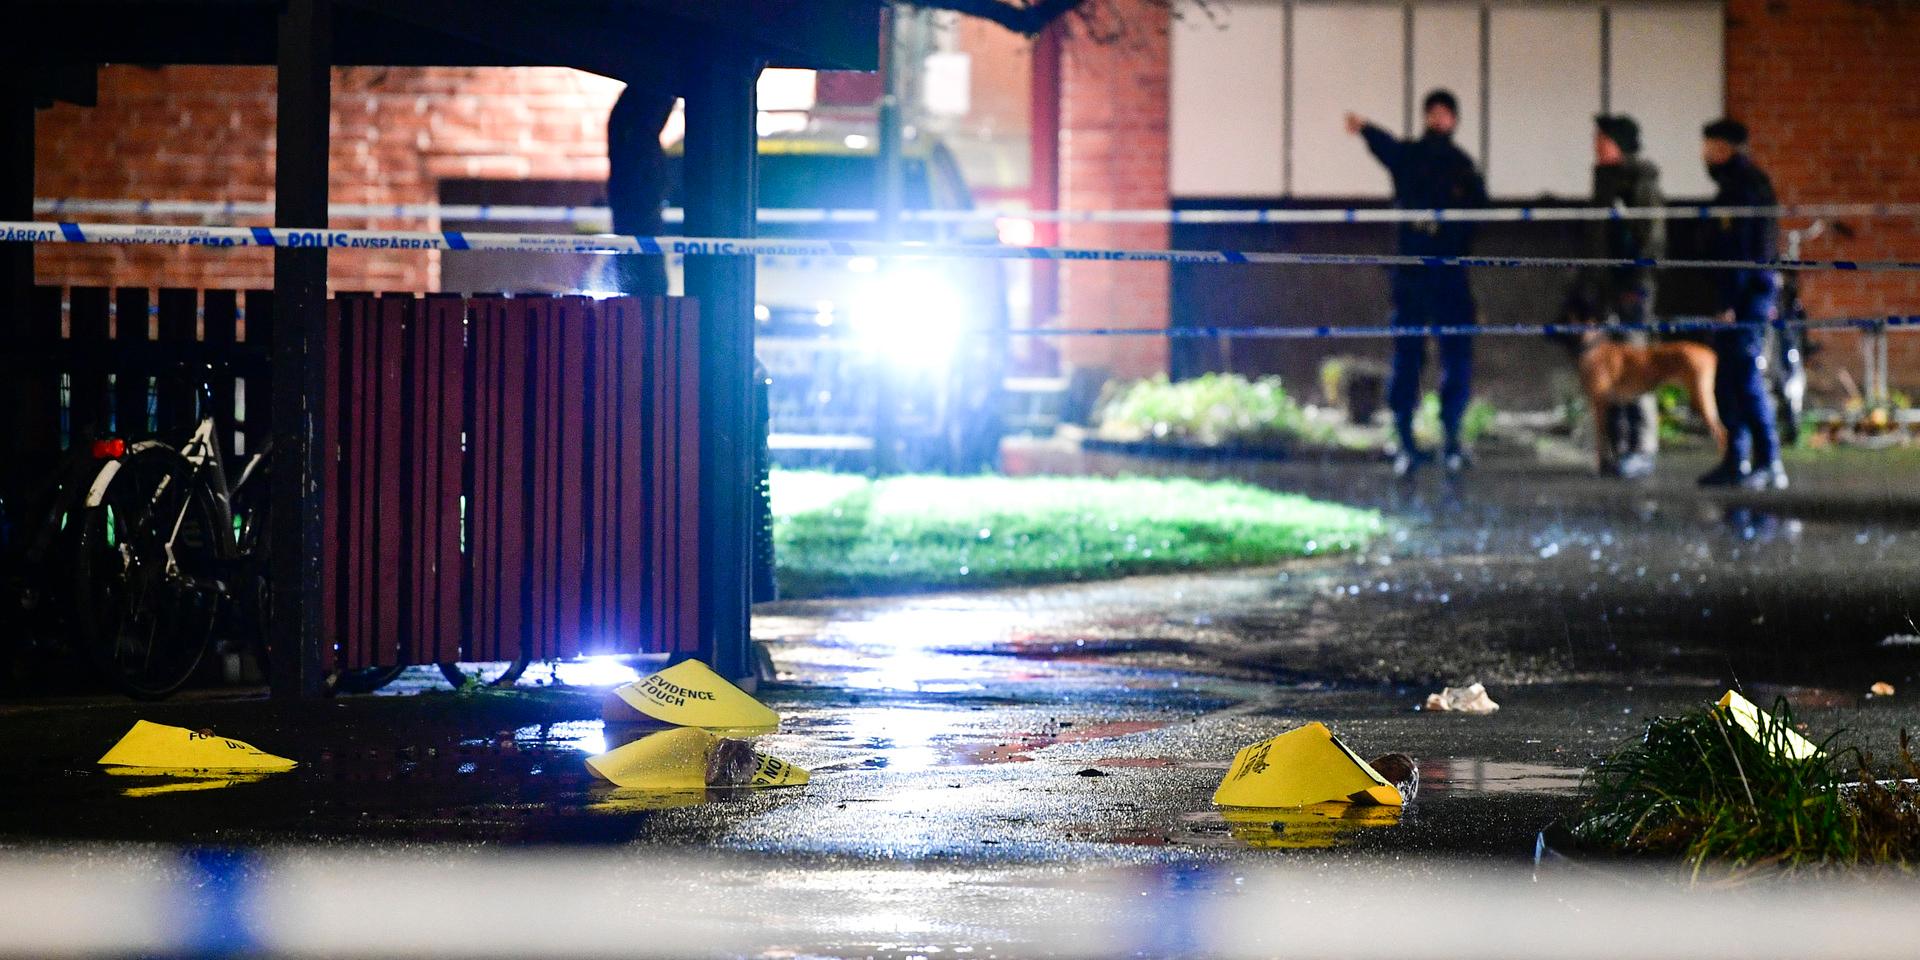 Polis, avspärrningar och specialsökhund på plats på en innergård i Kristianstad efter ett mordförsök på söndagskvällen.